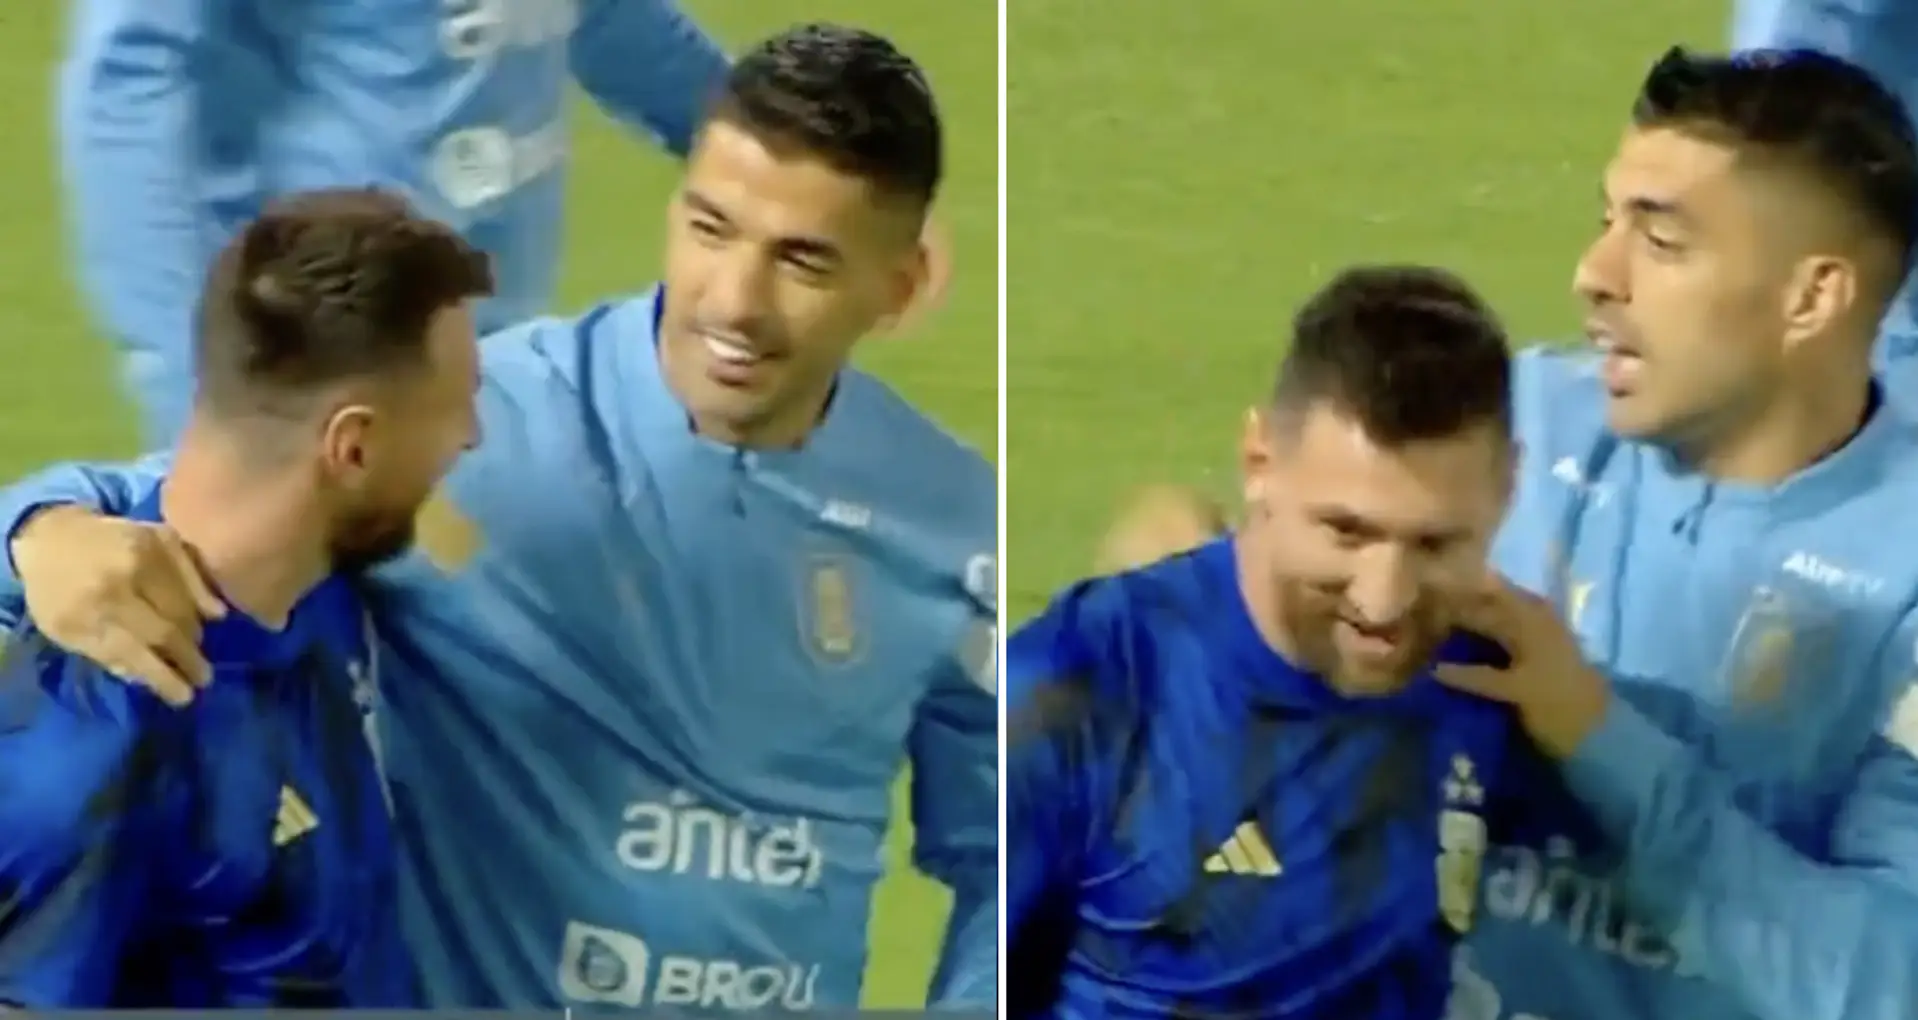 Repéré: des retrouvailles réconfortantes Messi-Suarez interrompues de manière flagrante par le "garde du corps" De Paul